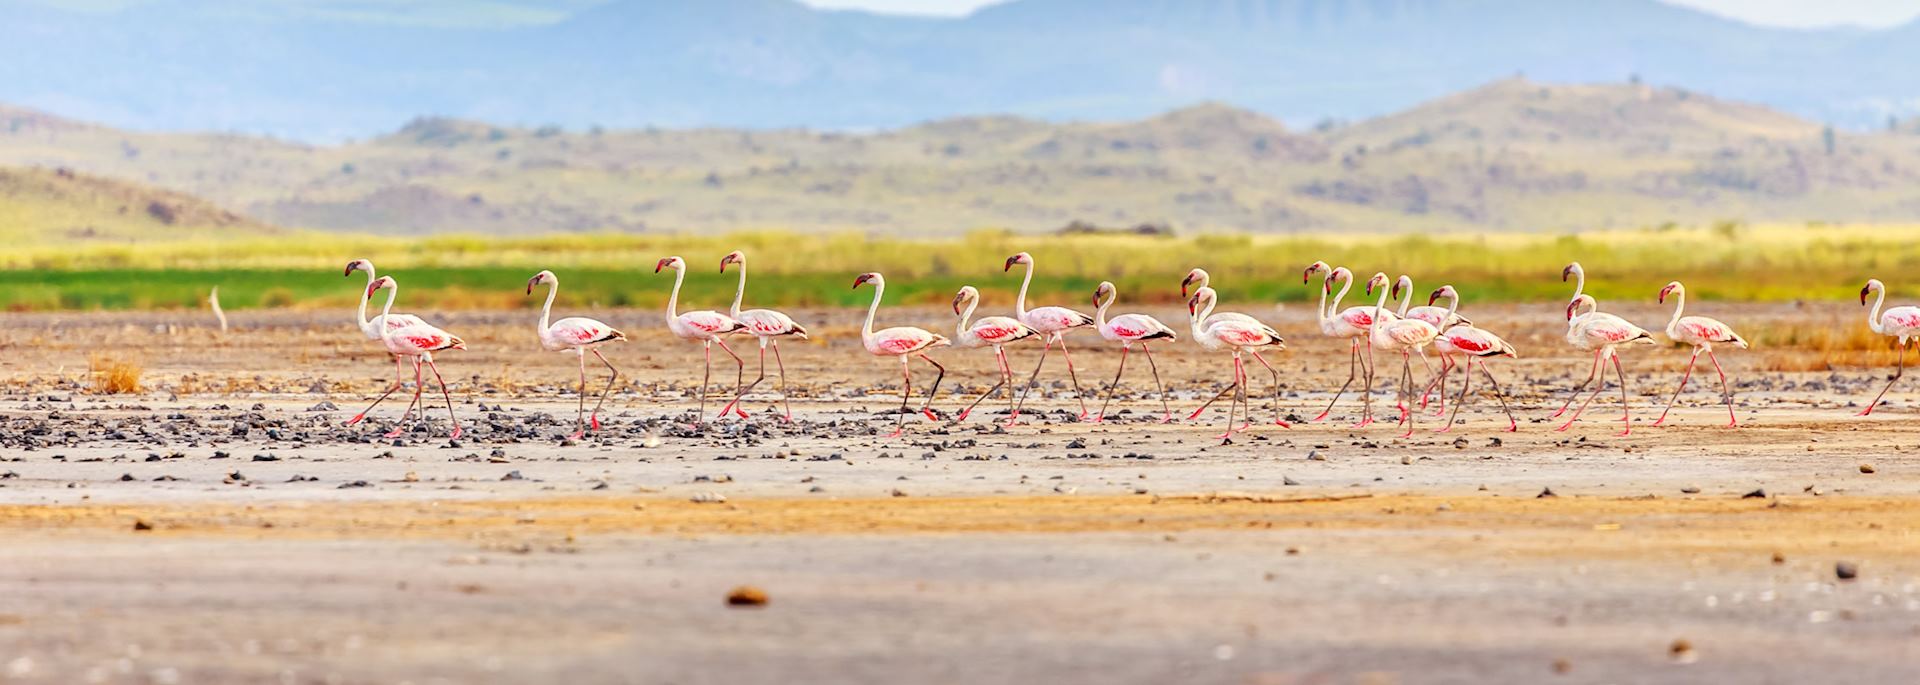 Flamingos at Lake Natron, Tanzania